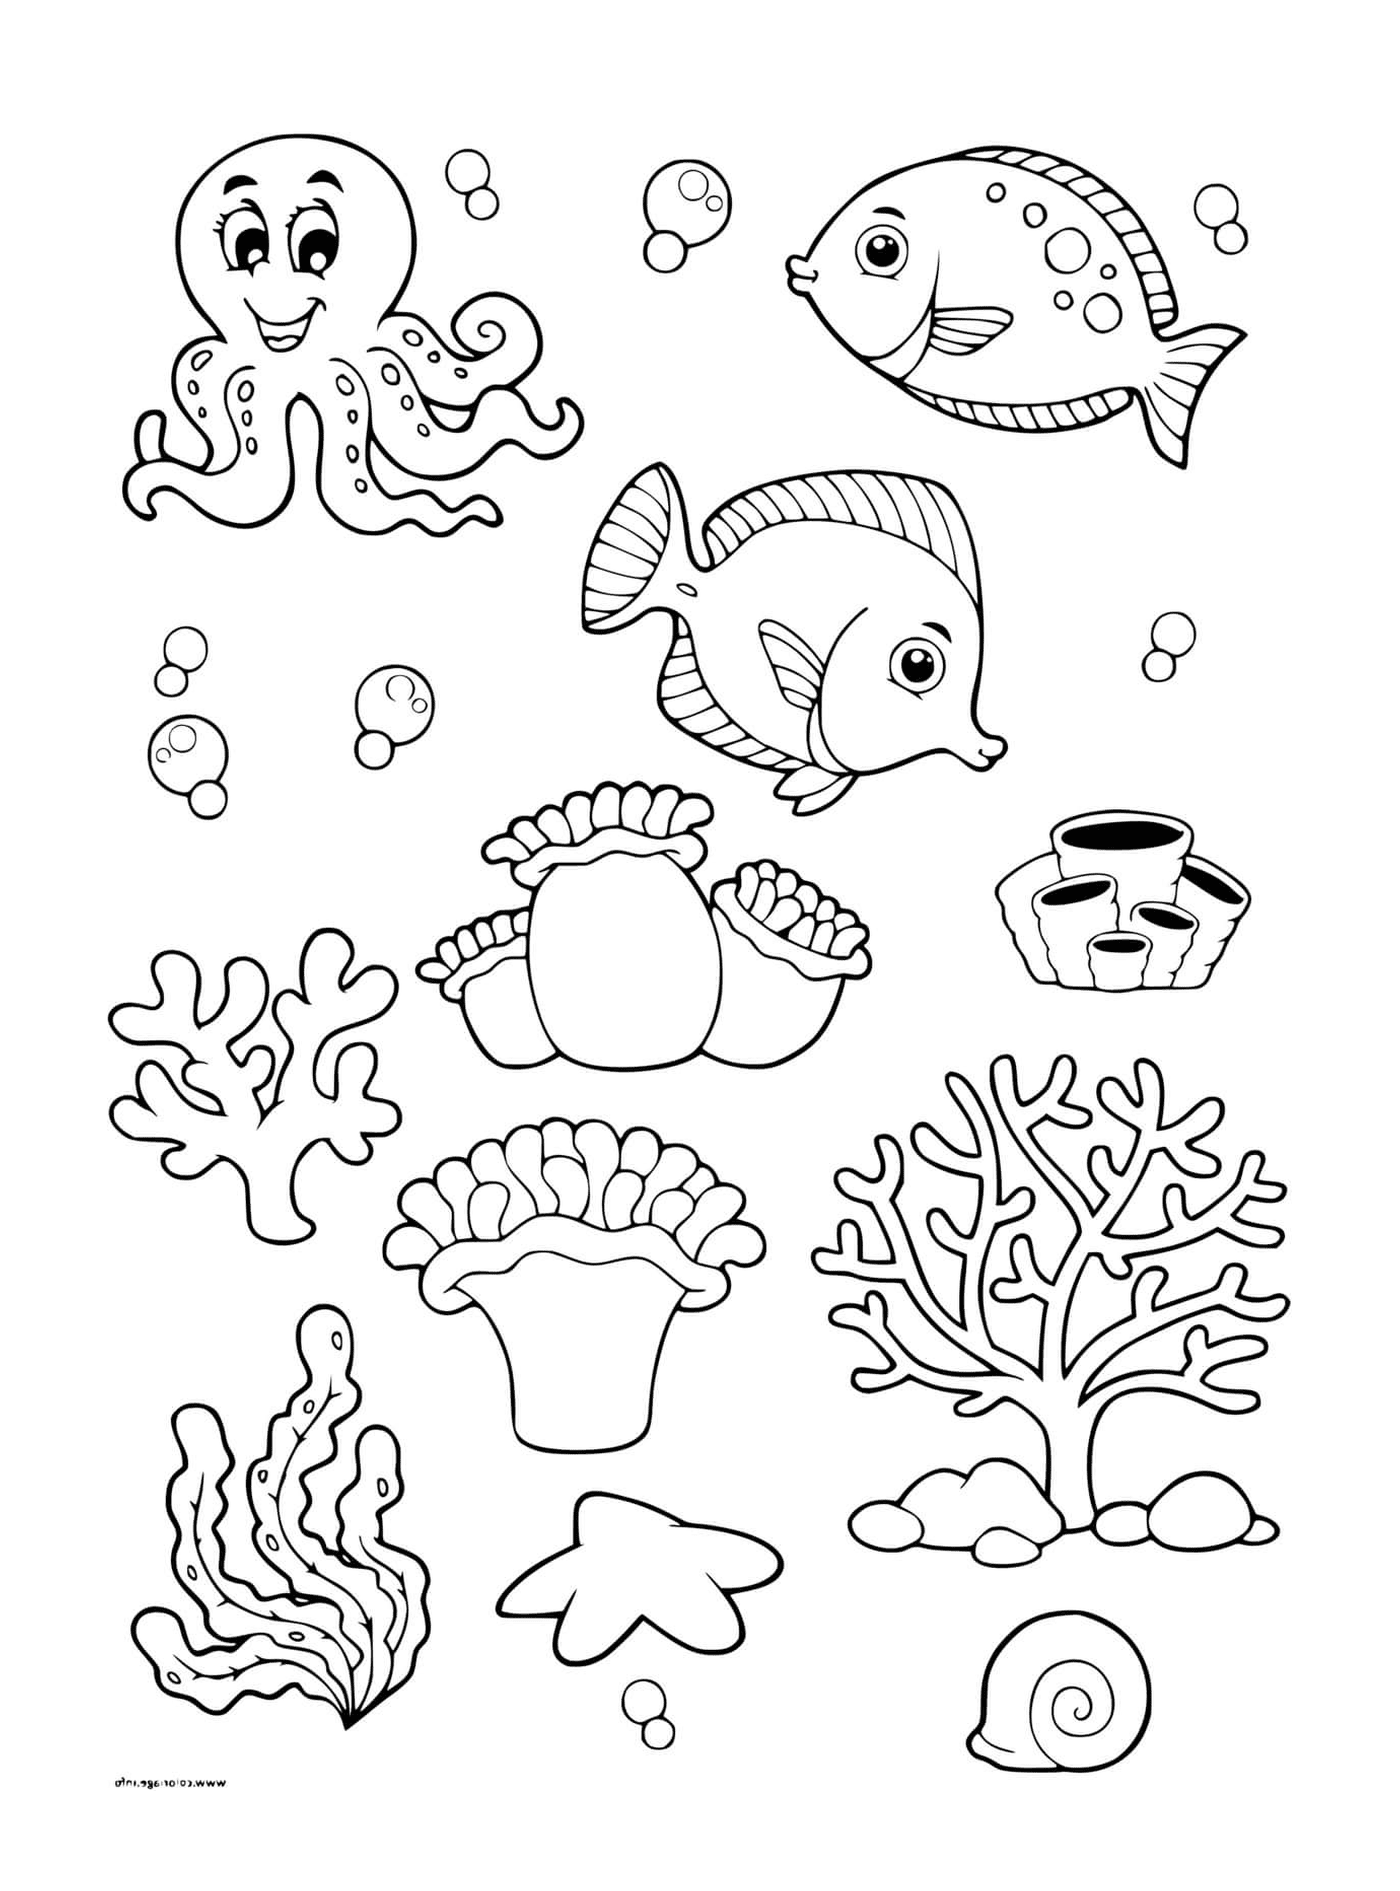  Marine bottom with various marine animals 